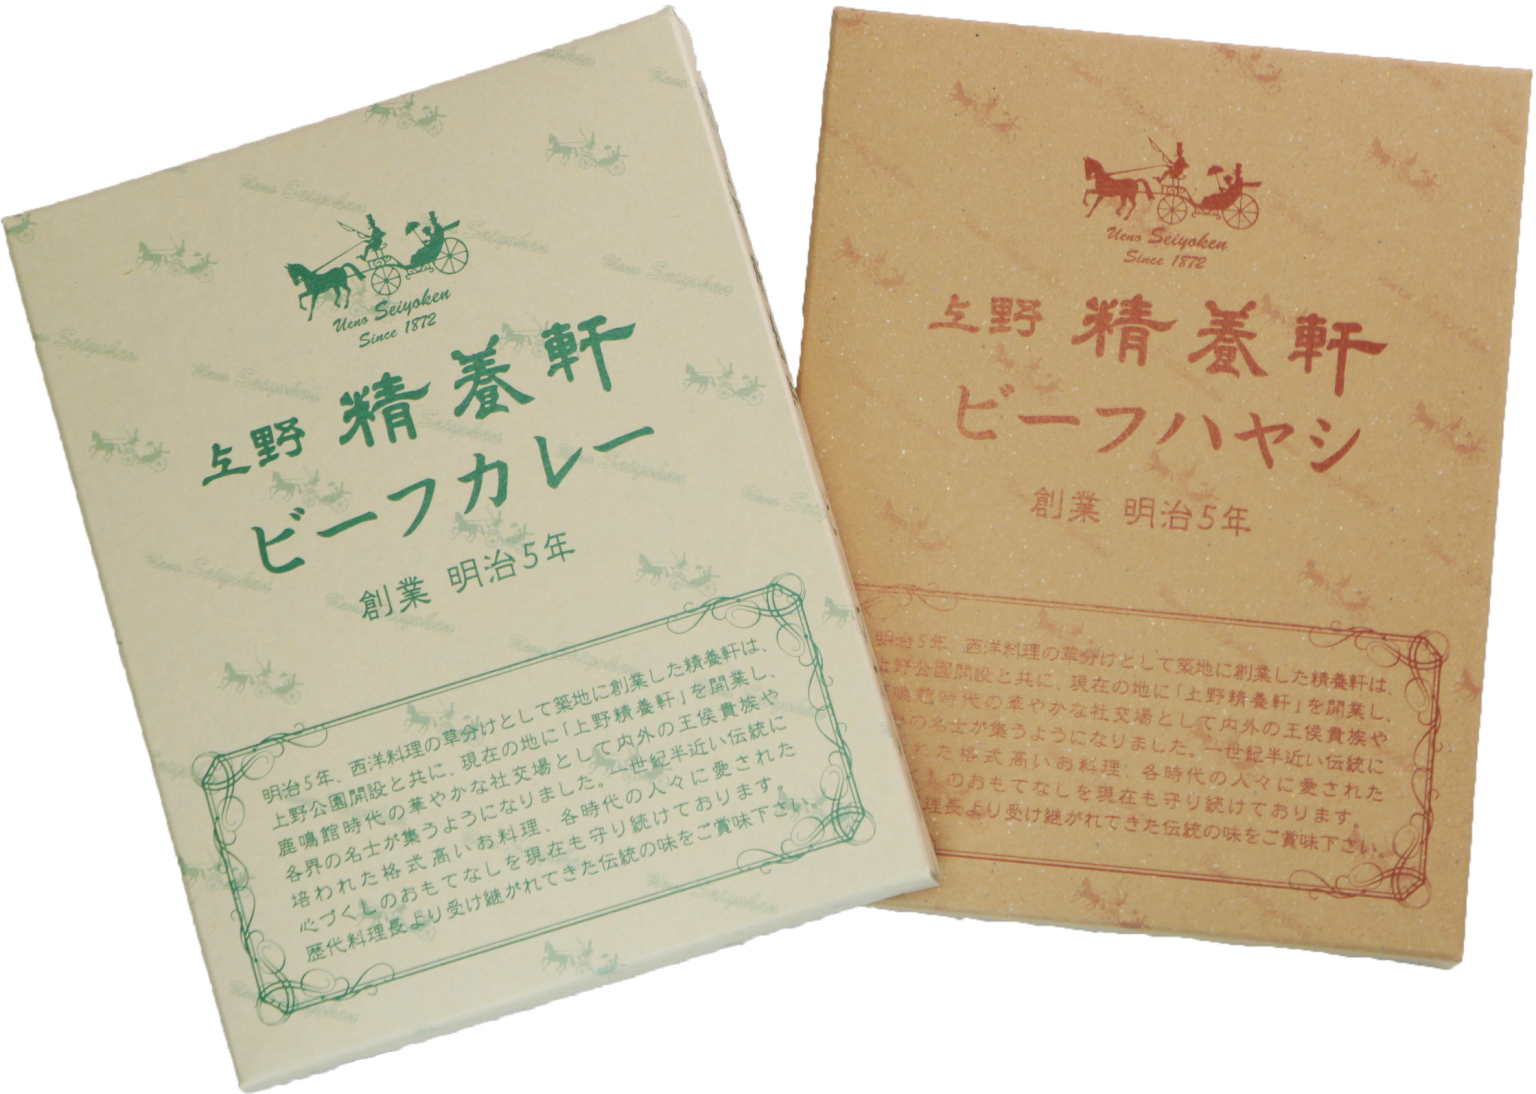 【新商品】レトルトカレー・ハヤシ販売のお知らせ – 上野精養軒